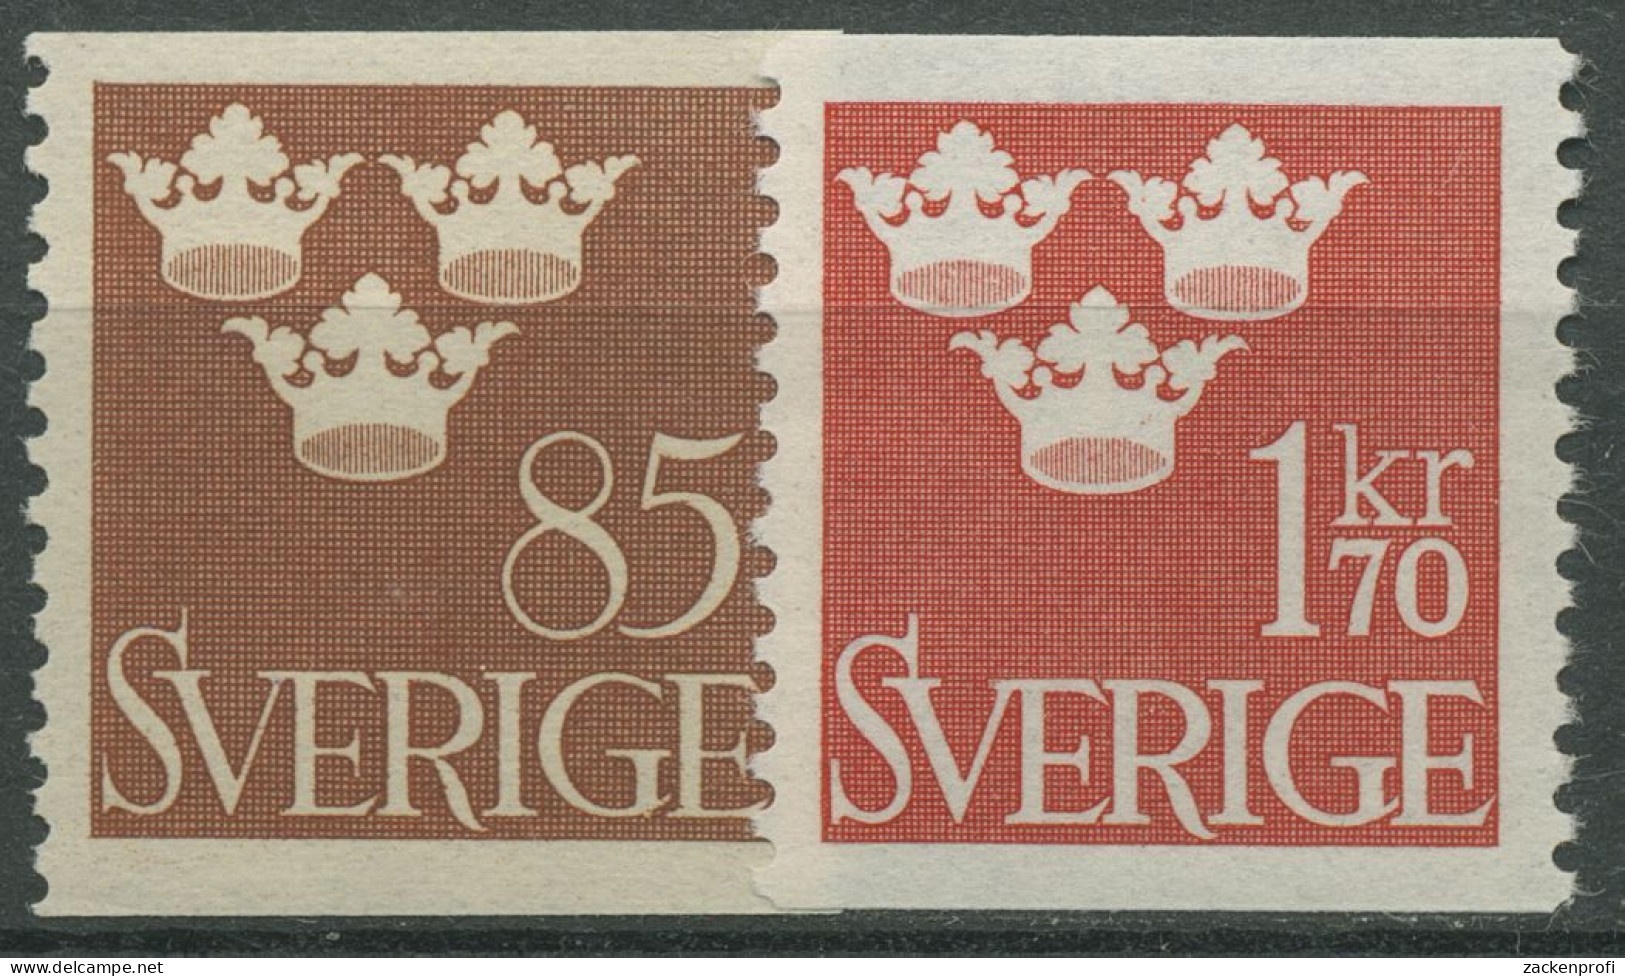 Schweden 1951 Freimarken Drei Kronen 361/62 Postfrisch - Ungebraucht